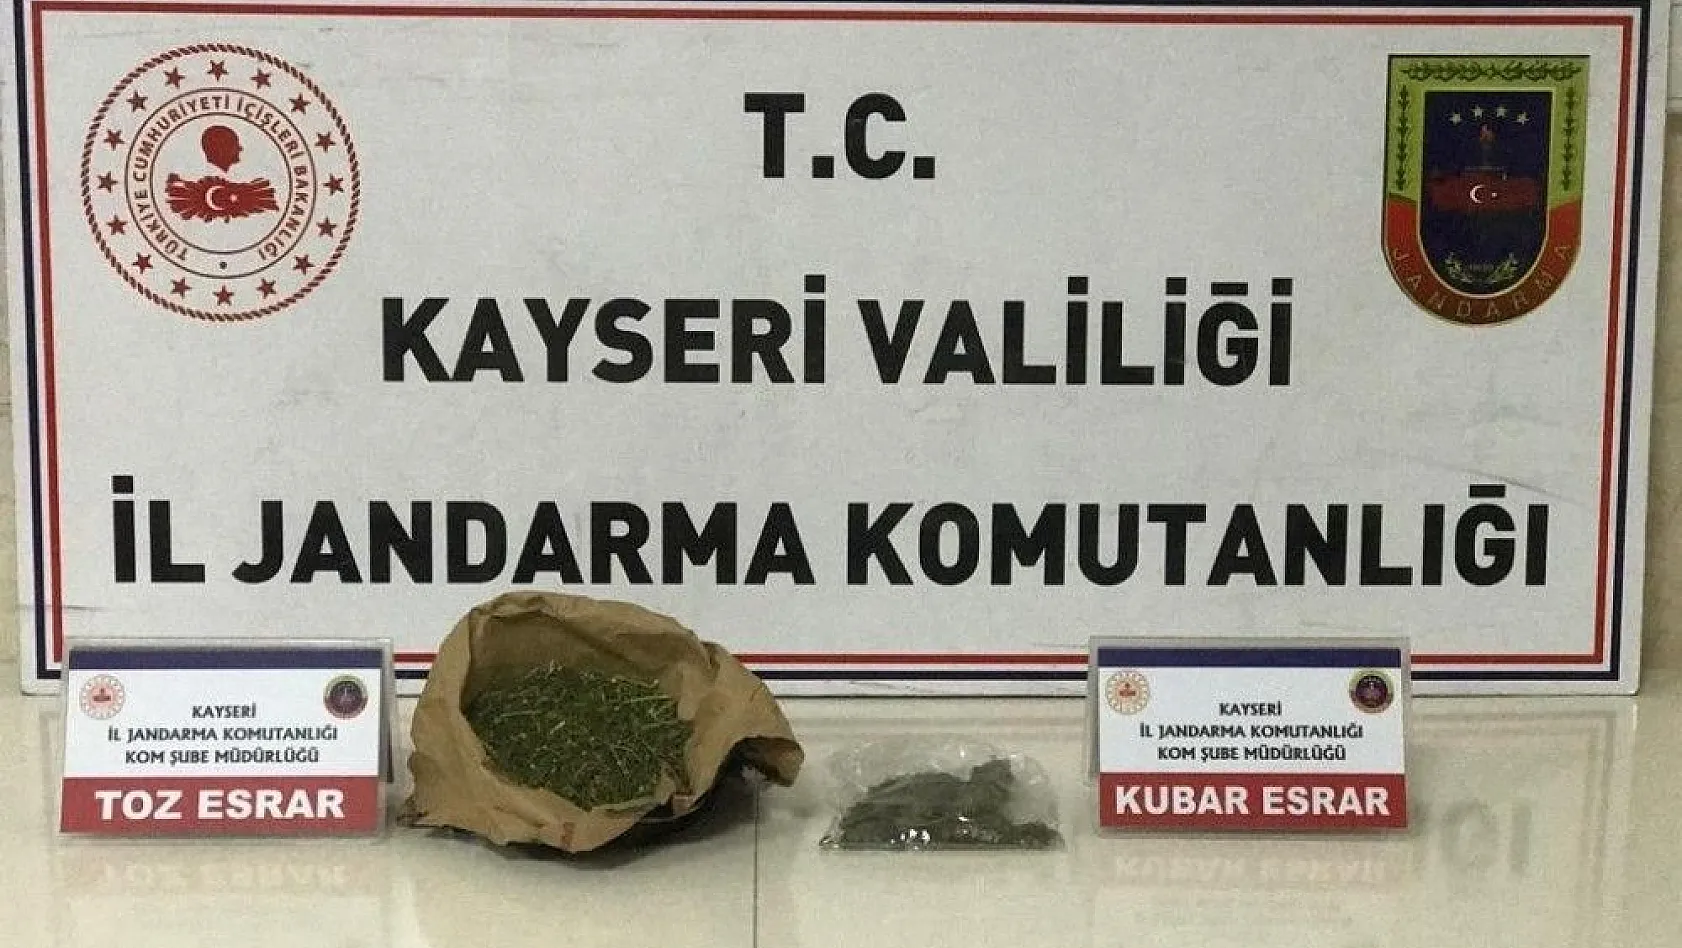 Kayseri'de jandarmanın evde yaptığı aramada 250 gram esrar ele geçirildi